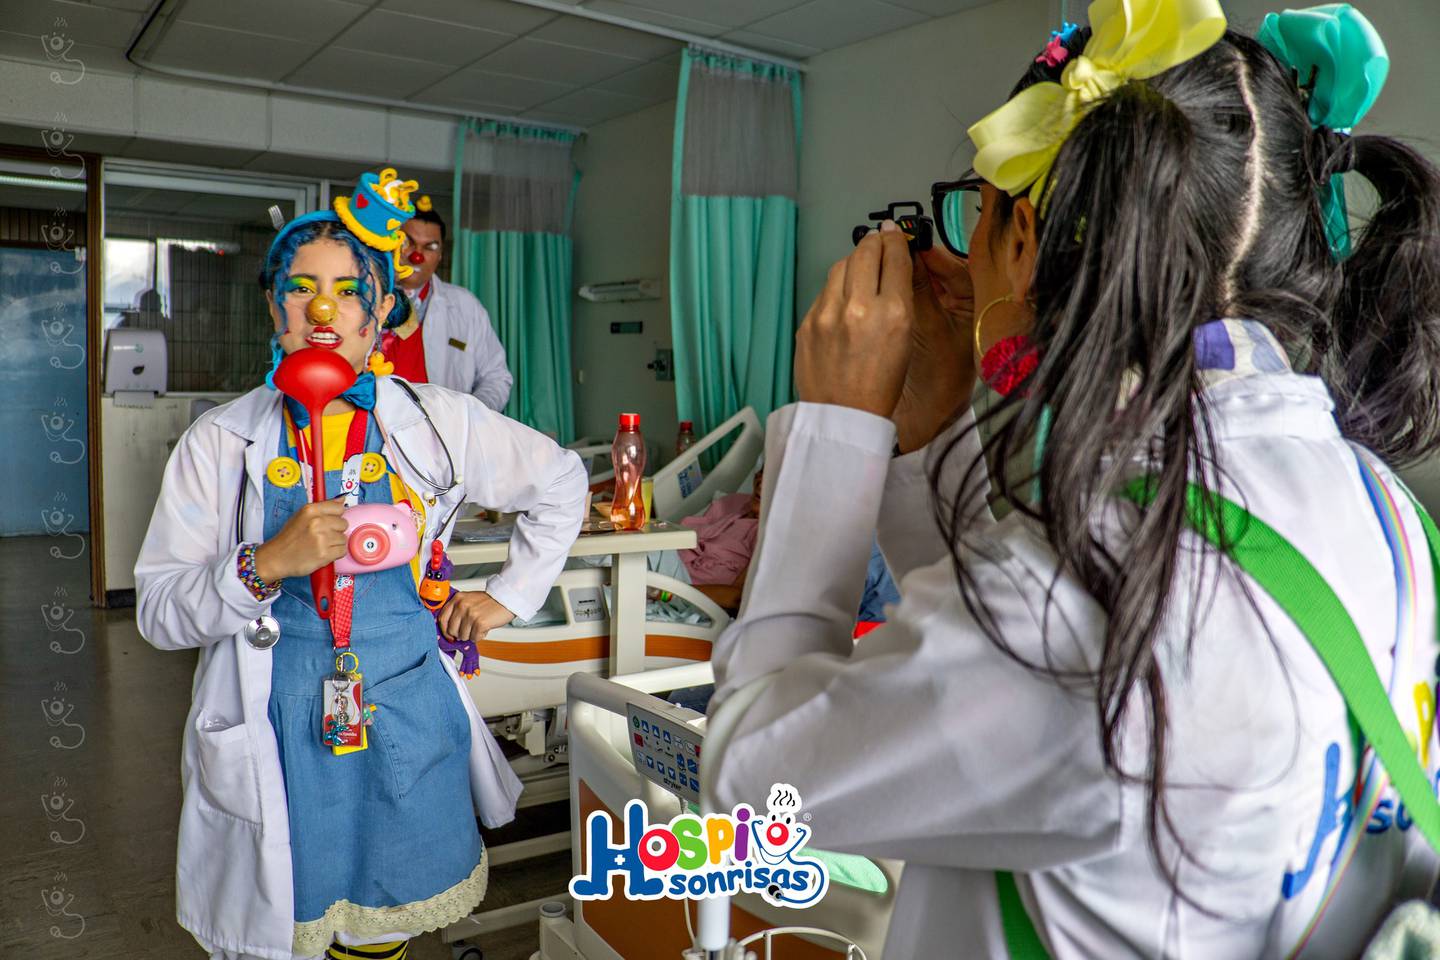 La microbióloga Angie Cervantes Rodríguez creó en el 2007 Hospisonrisas. Ella es la payasita "Solución Salina 90-60-90". Los doctores sonrisa alegran a pacientes, familiares y personal médico de todos los hospitales del país.